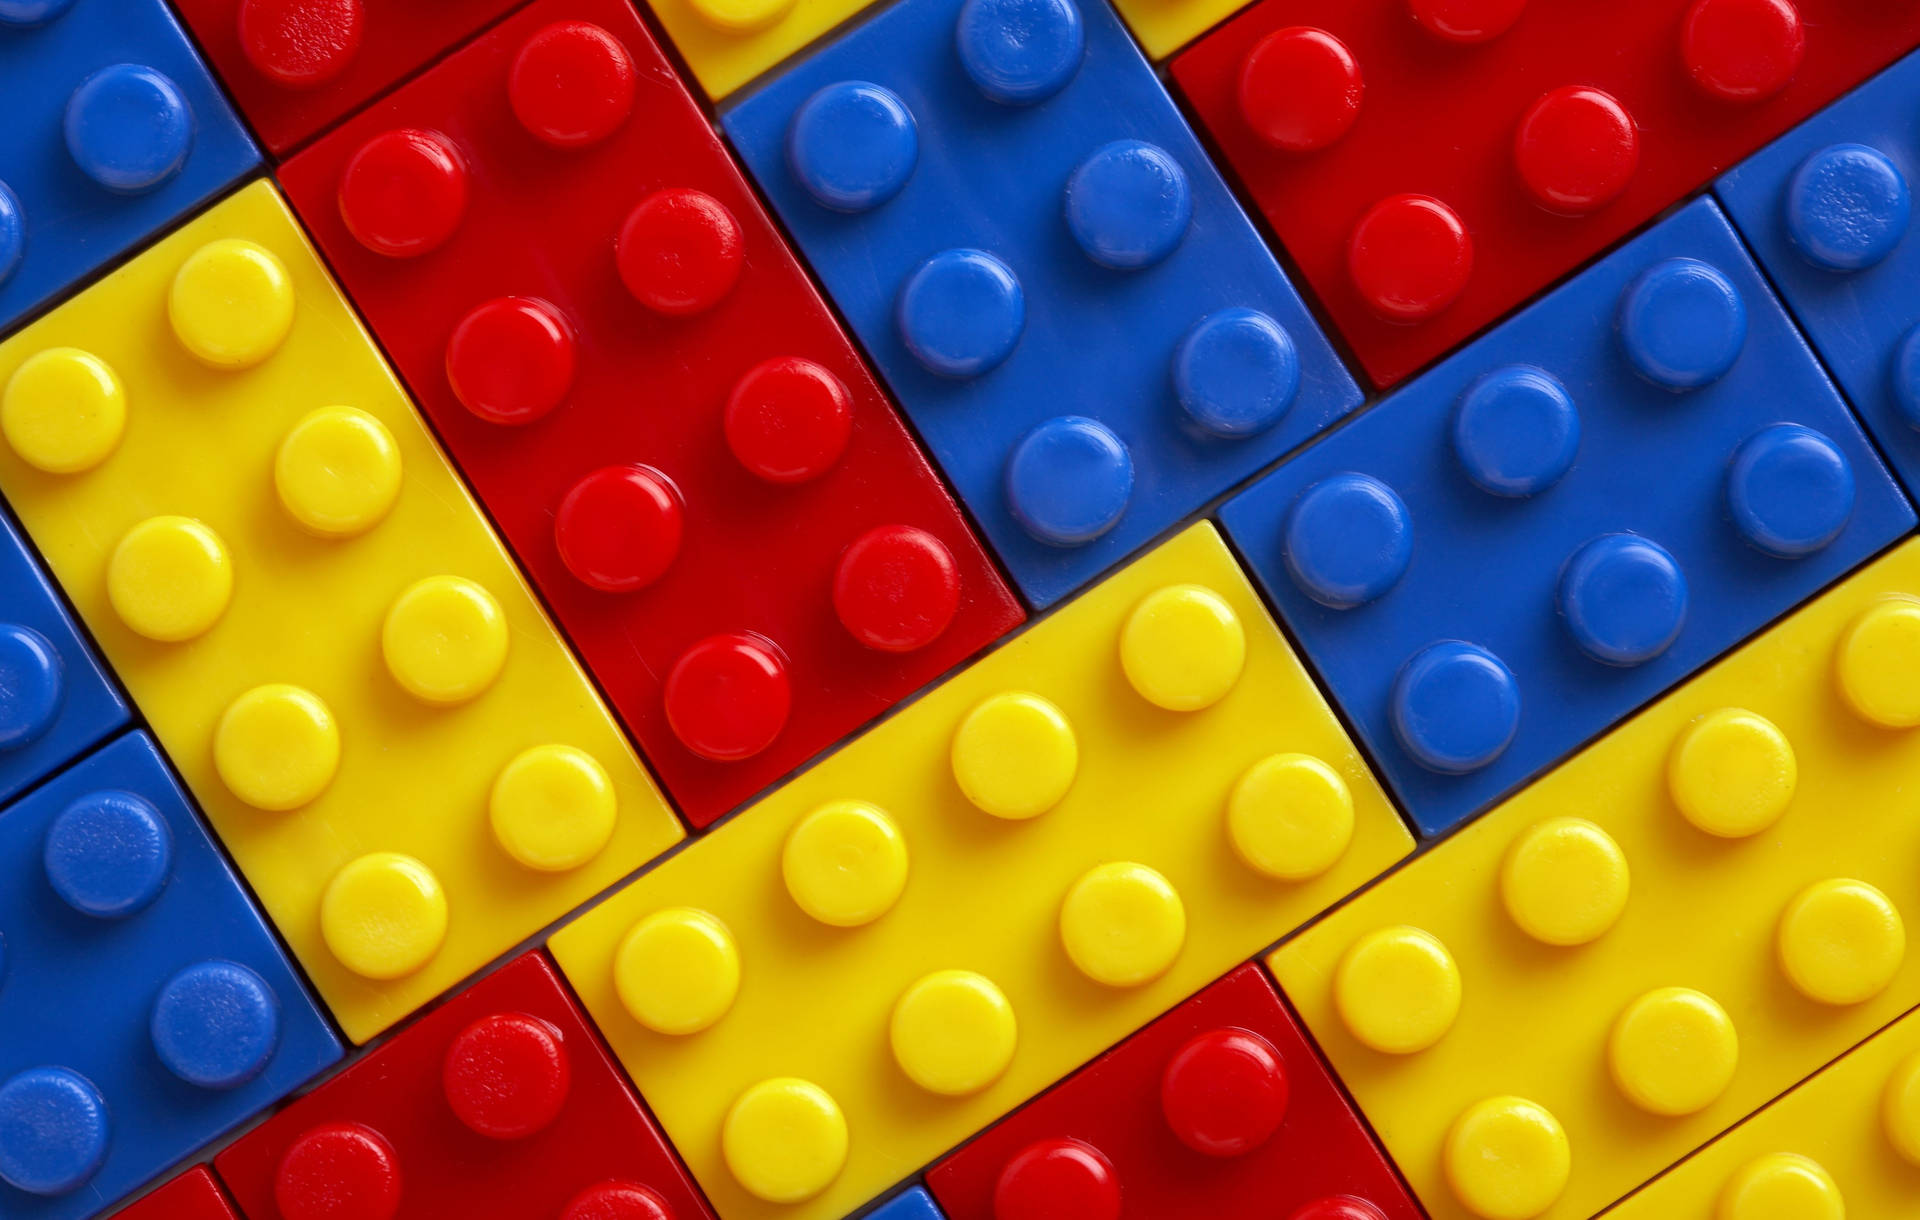 Download Lego Wallpaper